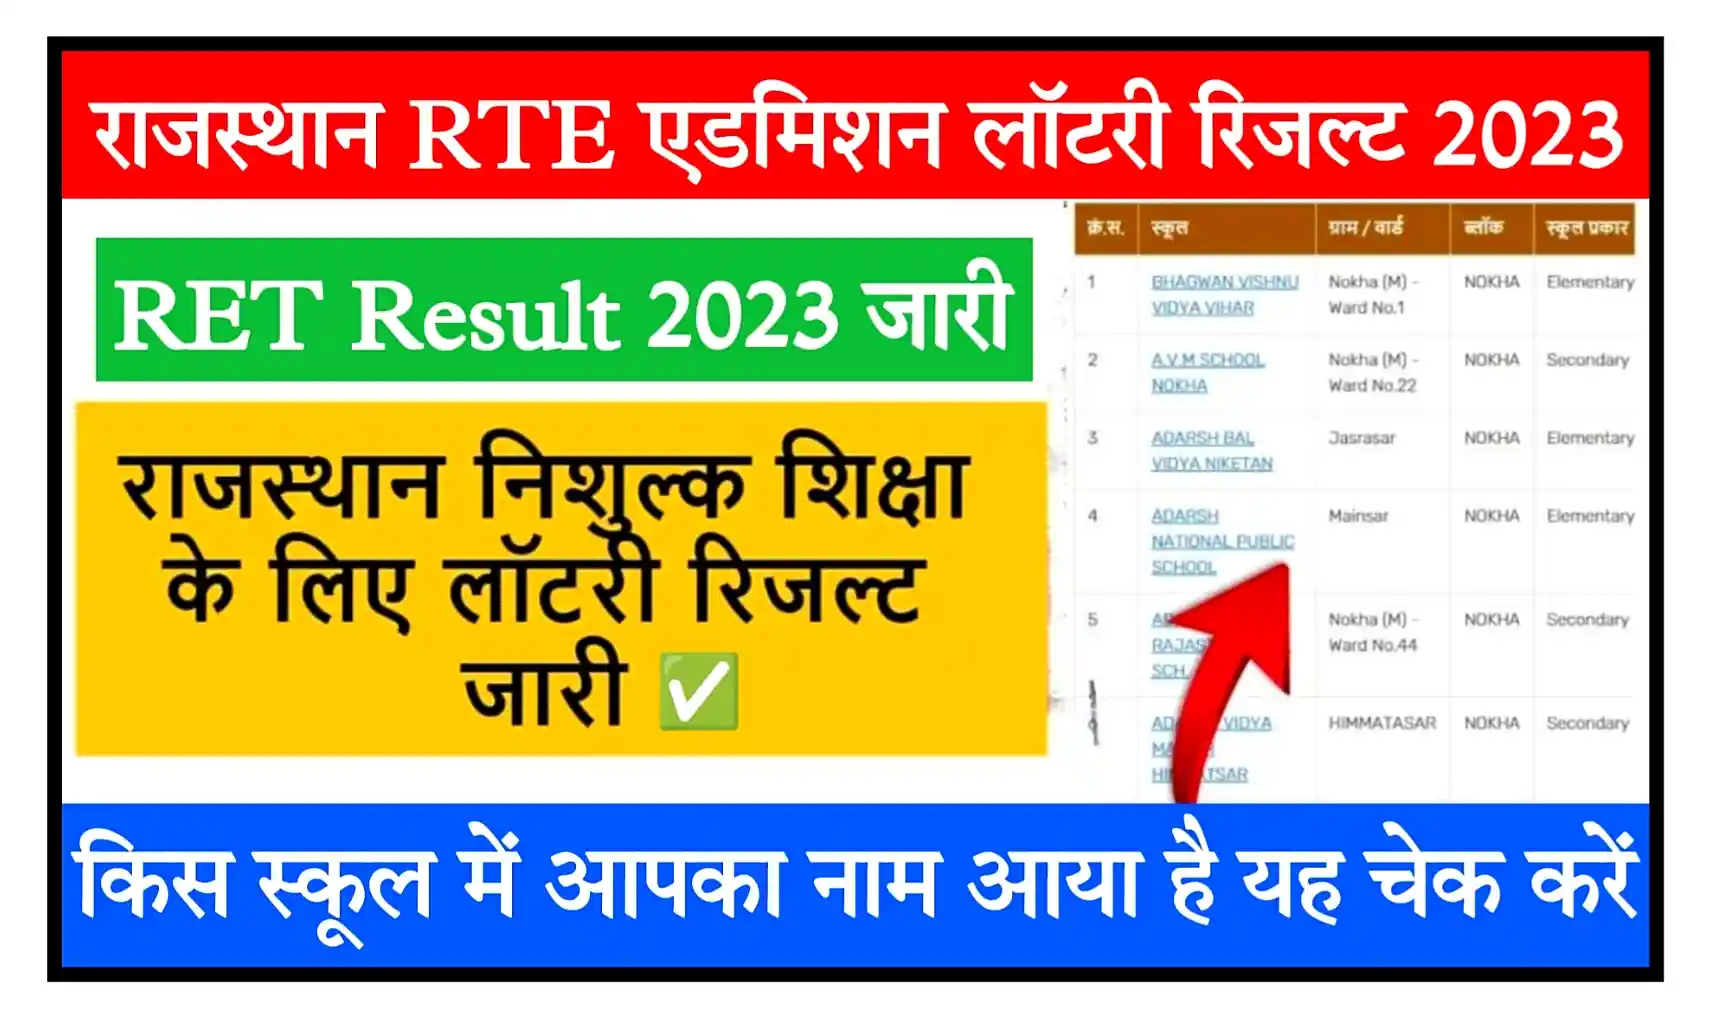 Rajasthan RTE Admission Lottery Result 2023 राजस्थान RTE एडमिशन लॉटरी रिजल्ट मेरिट लिस्ट जारी, यहां से चेक करें